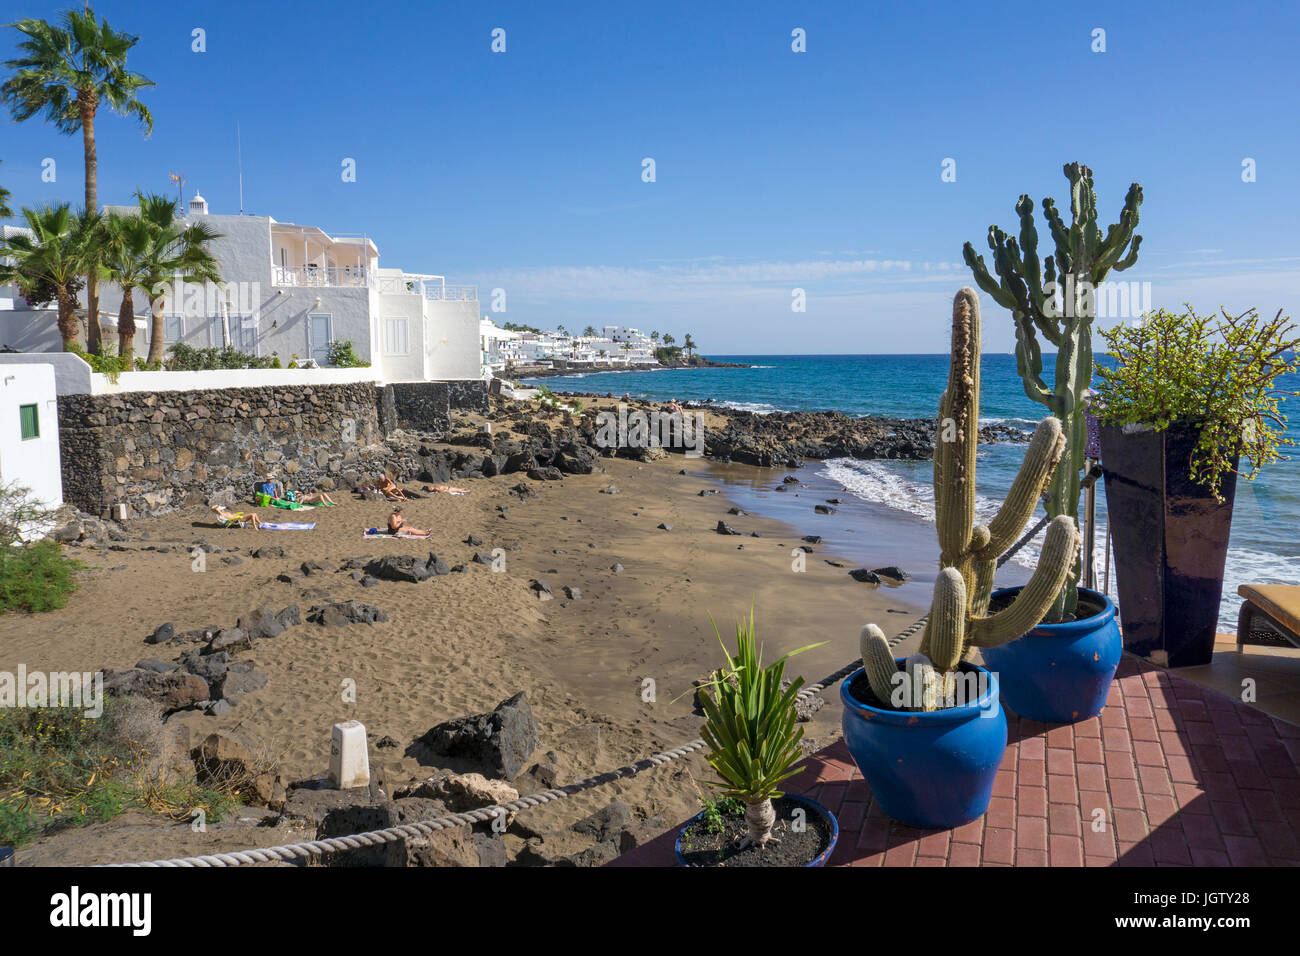 Petites plages entre les rochers de lave et ci-dessous la promenade, Puerto del Carmen, Lanzarote, îles Canaries, Espagne, Europe Banque D'Images